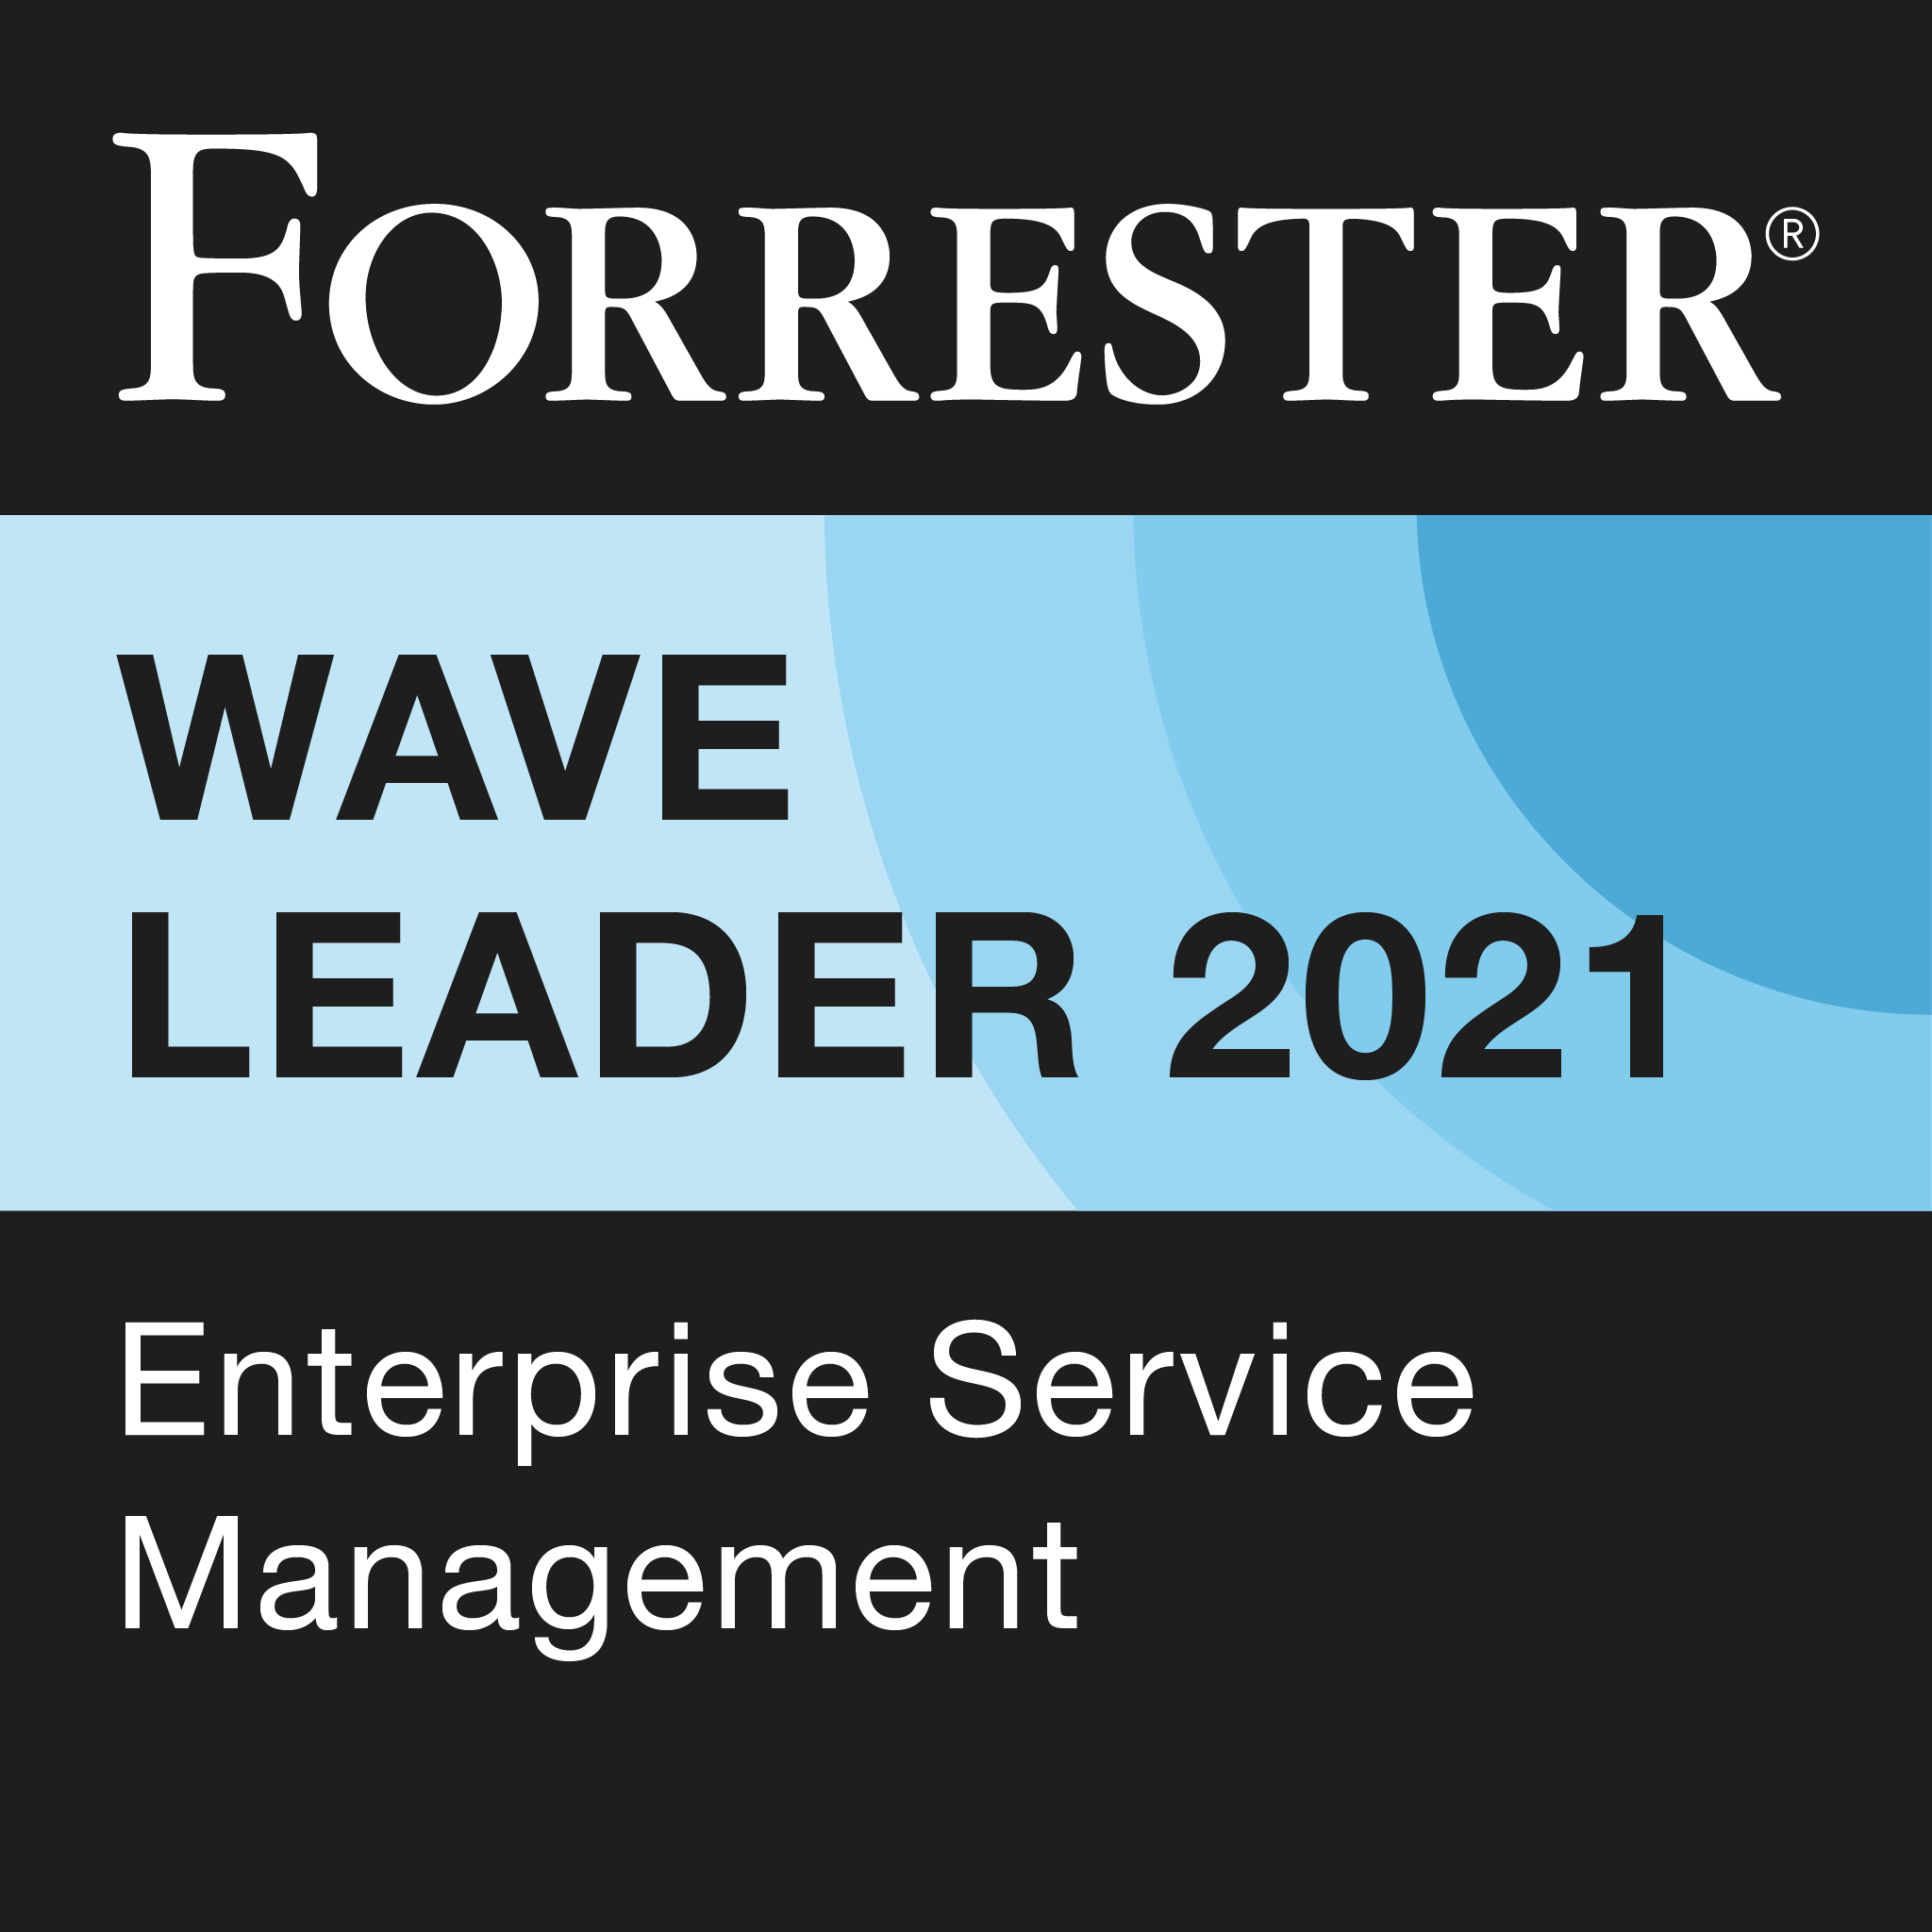 Forrester named Atlassian a Leader in the 2021 Enterprise Service Management Wave.